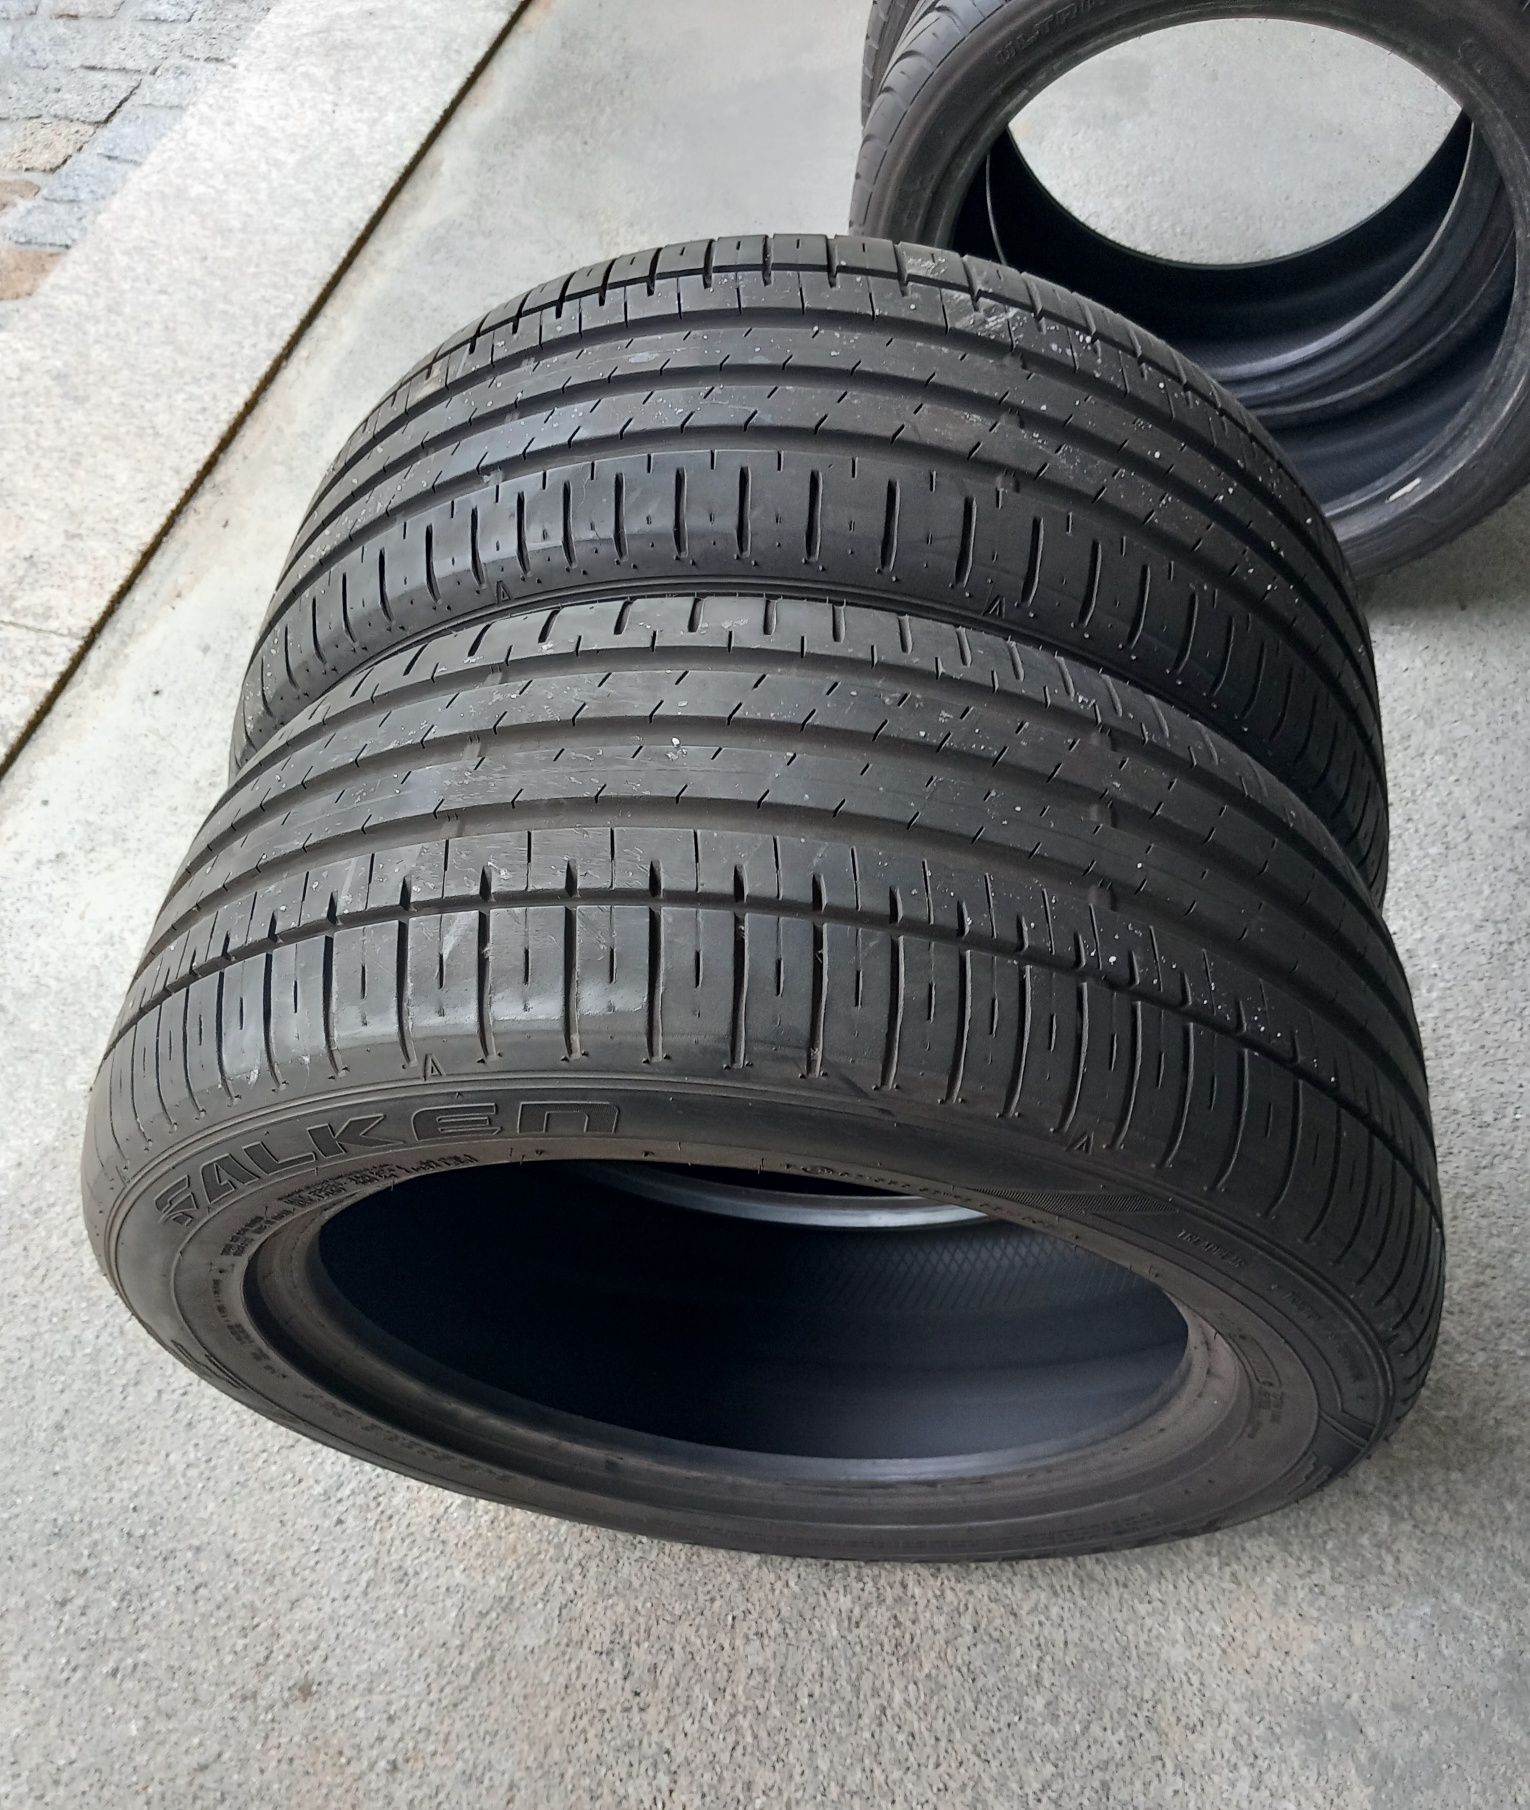 2 pneus 245/50R18 Falken semi novos